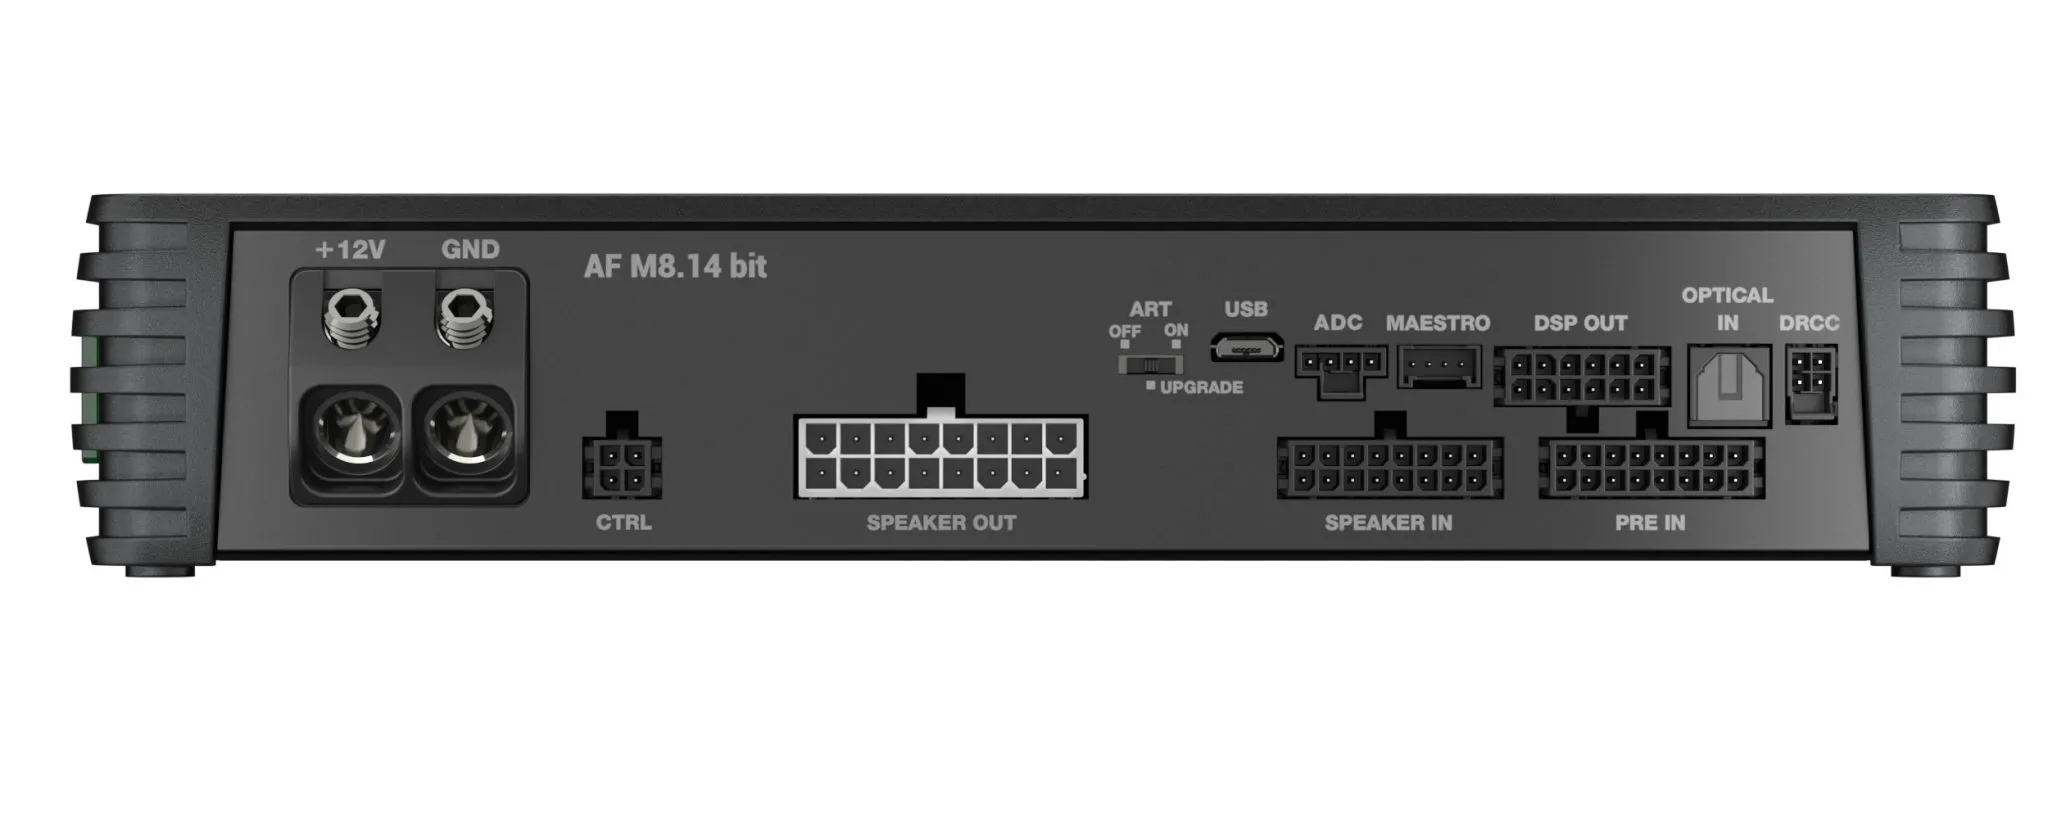 Audison AF M12.14 bitDSP Amplifier | 1080 W | 14 CH DSP + 12 x 90 W @ 2 ohm | D-class Fully Bridgeable